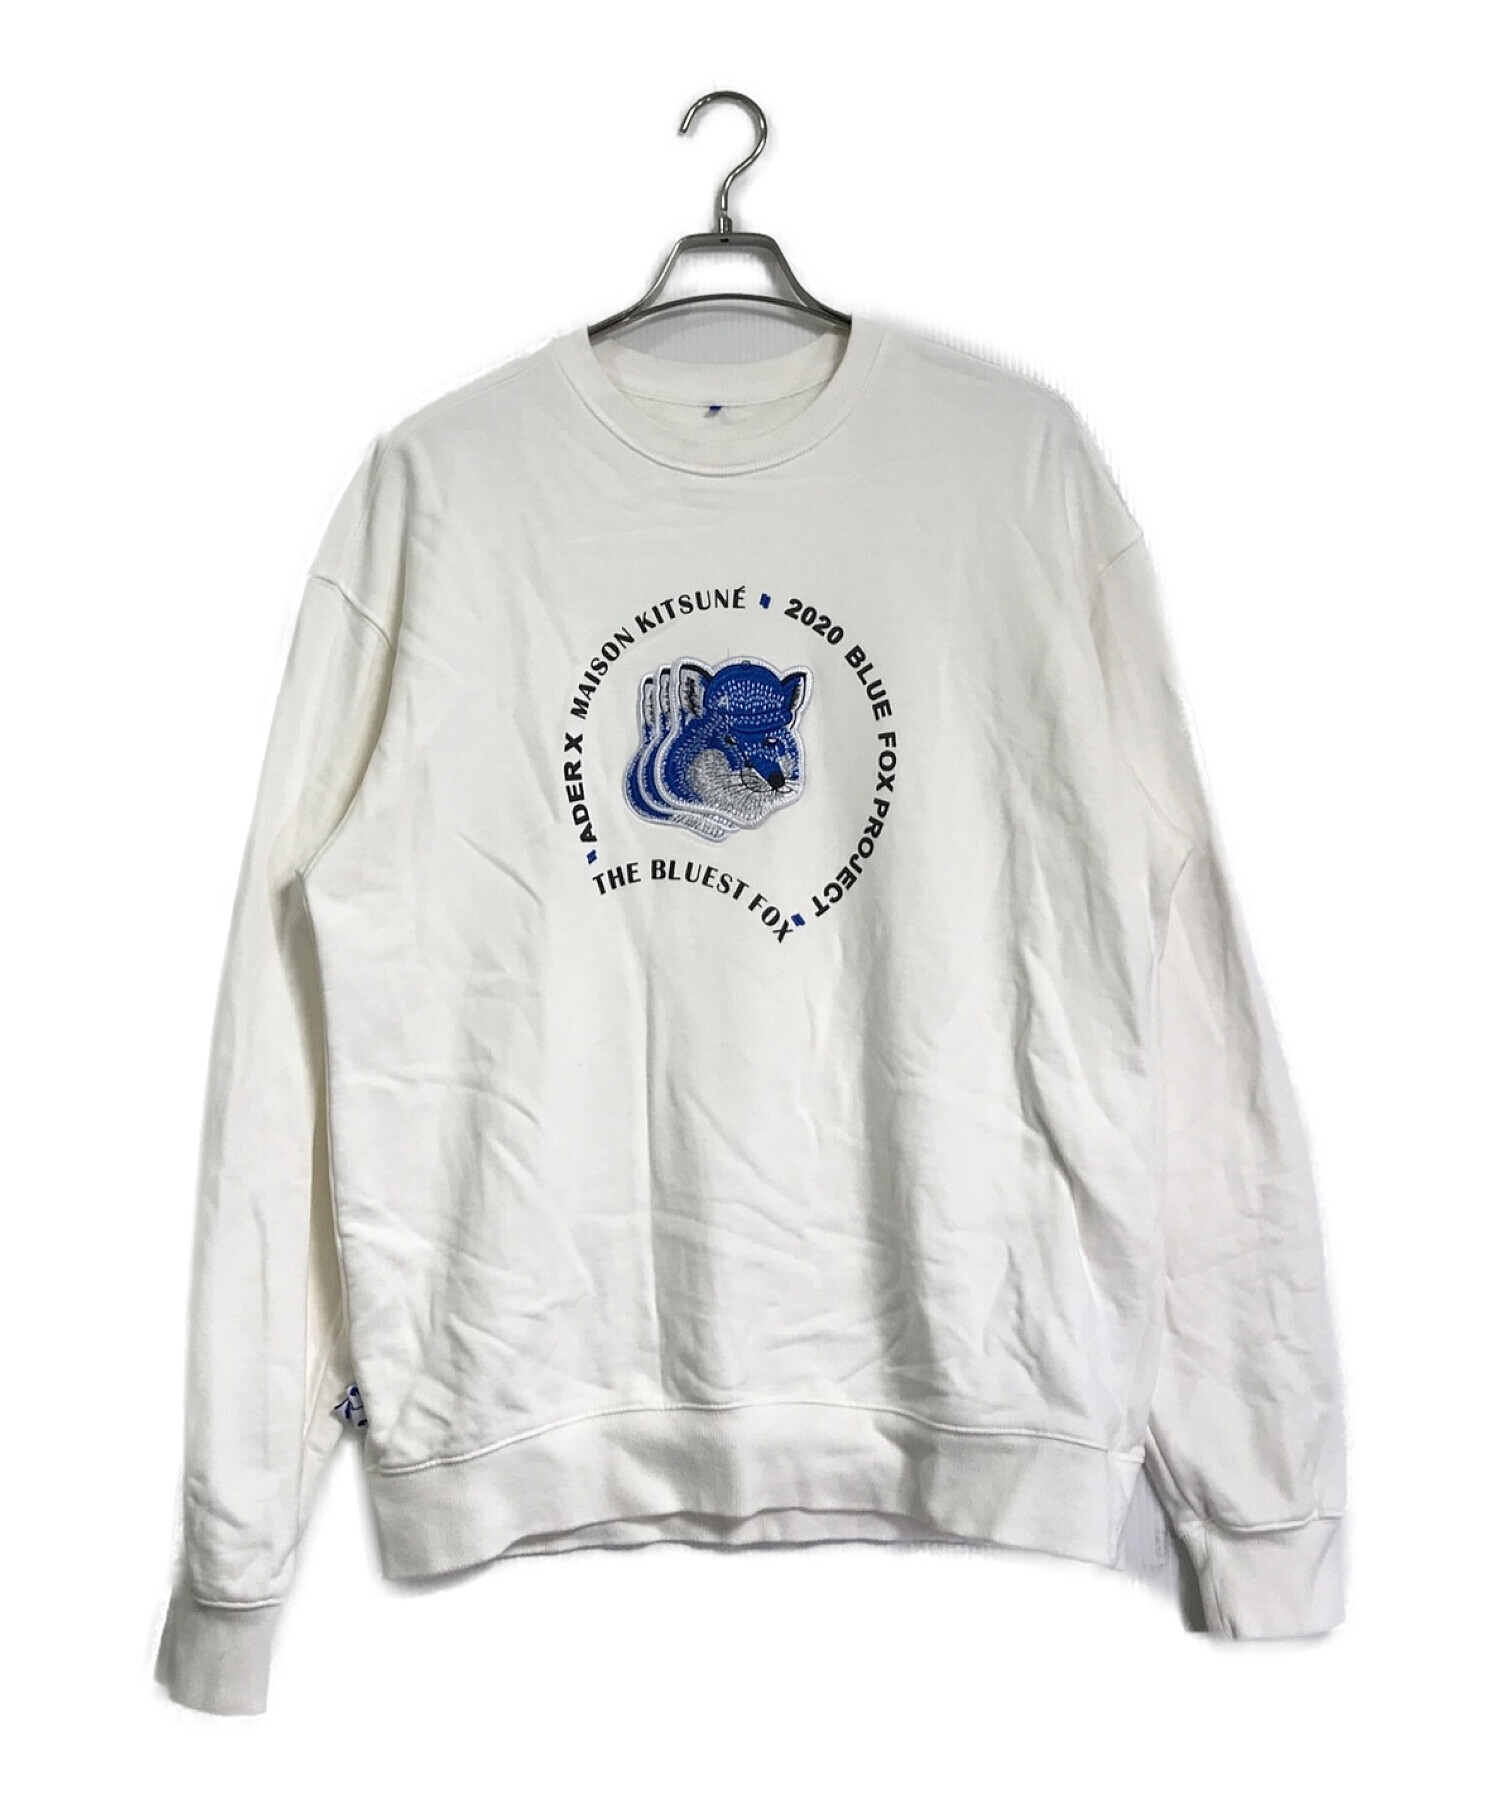 ADERERROR (アーダーエラー) maison kitsune (メゾンキツネ) Triple fox head sweatshirt /  トリプルフォックスヘッドスウェットシャツ ホワイト サイズ:A